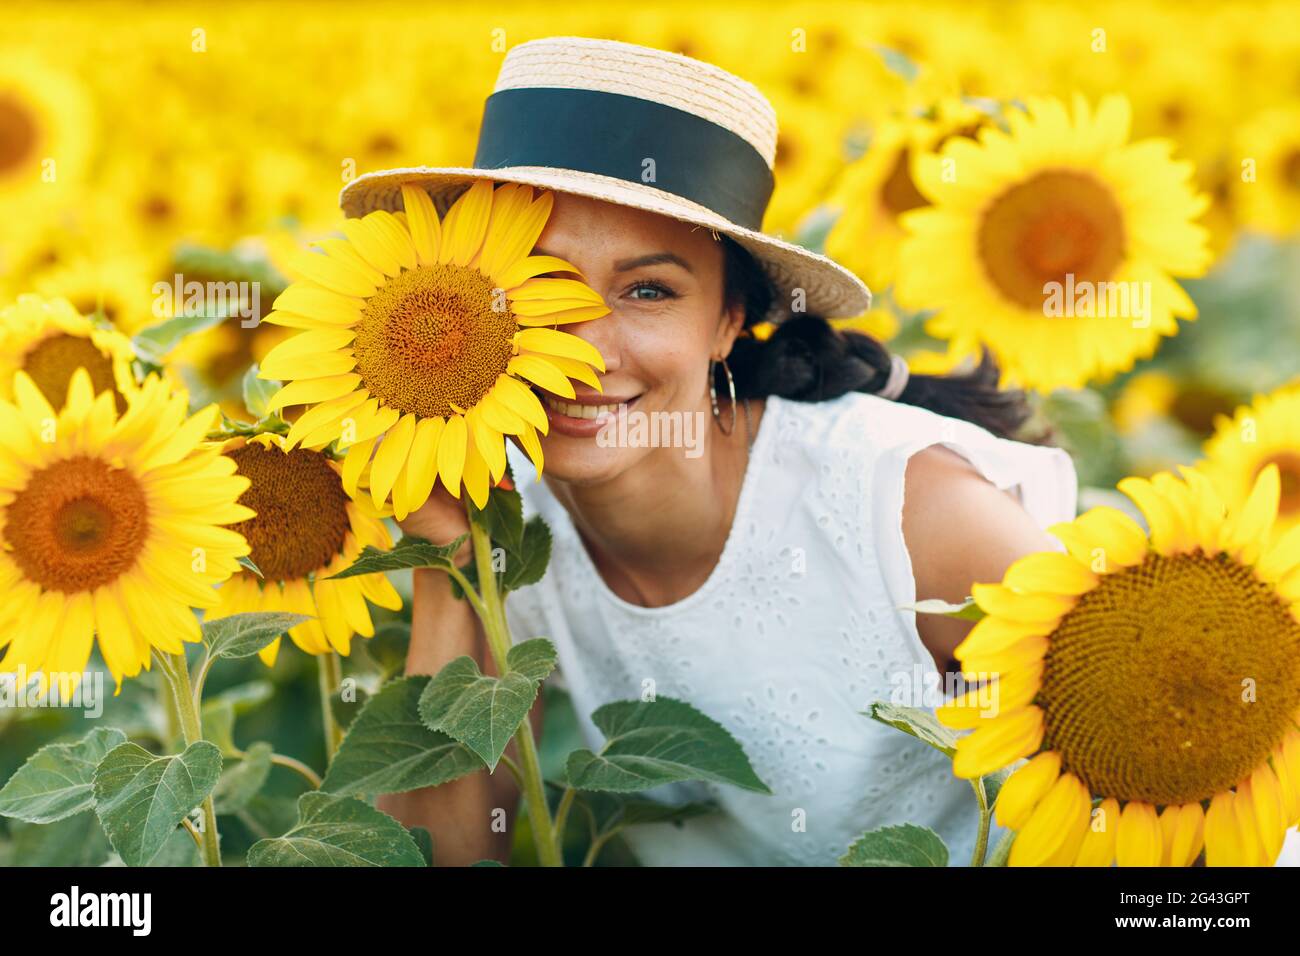 Belle jeune femme souriante dans un chapeau avec fleur sur son œil et son visage sur un champ de tournesols Banque D'Images